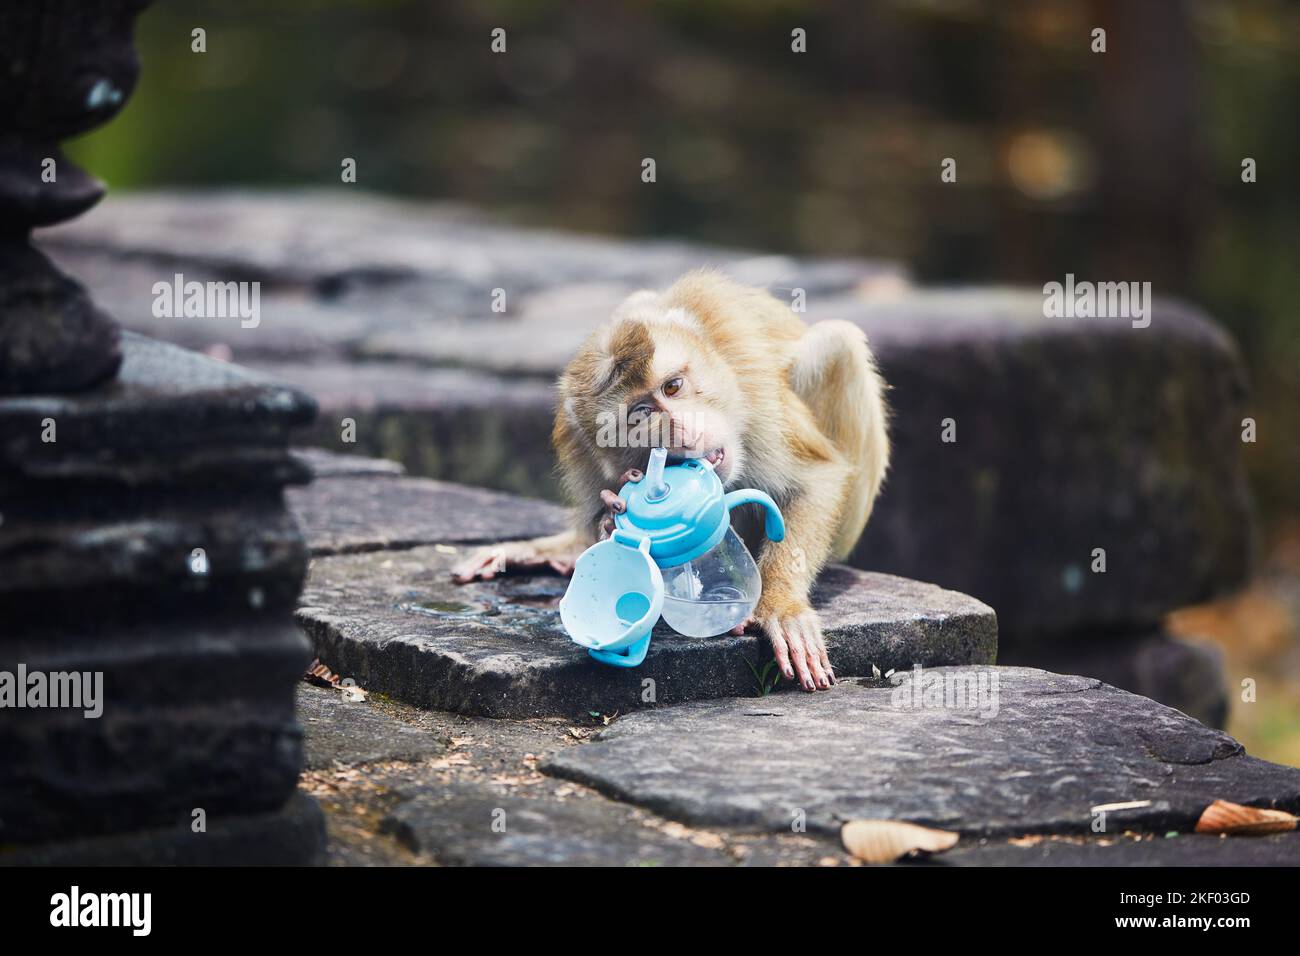 Affe versucht, aus der Babyflasche zu trinken, nachdem er sie von Touristen gestohlen hat. Themen wie Tierverhalten und Plastikmüll in der Natur. Stockfoto